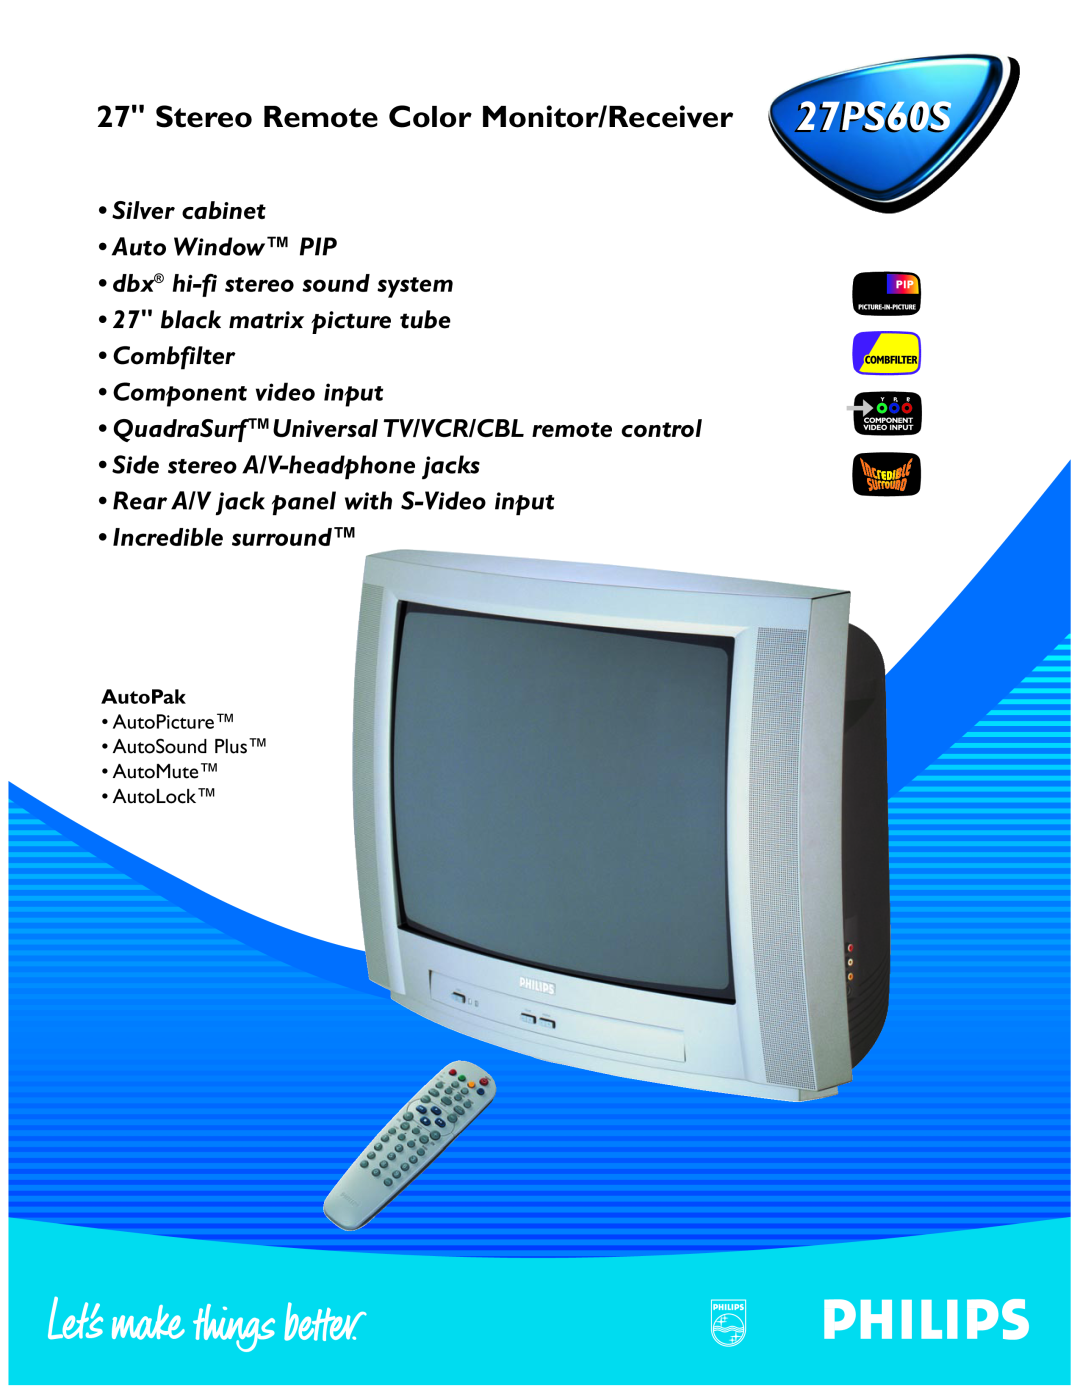 Philips 27PS 60S manual Stereo Remote Color Monitor/Receiver 27PS60S, QuadraSurfUniversal TV/VCR/CBL remote control 